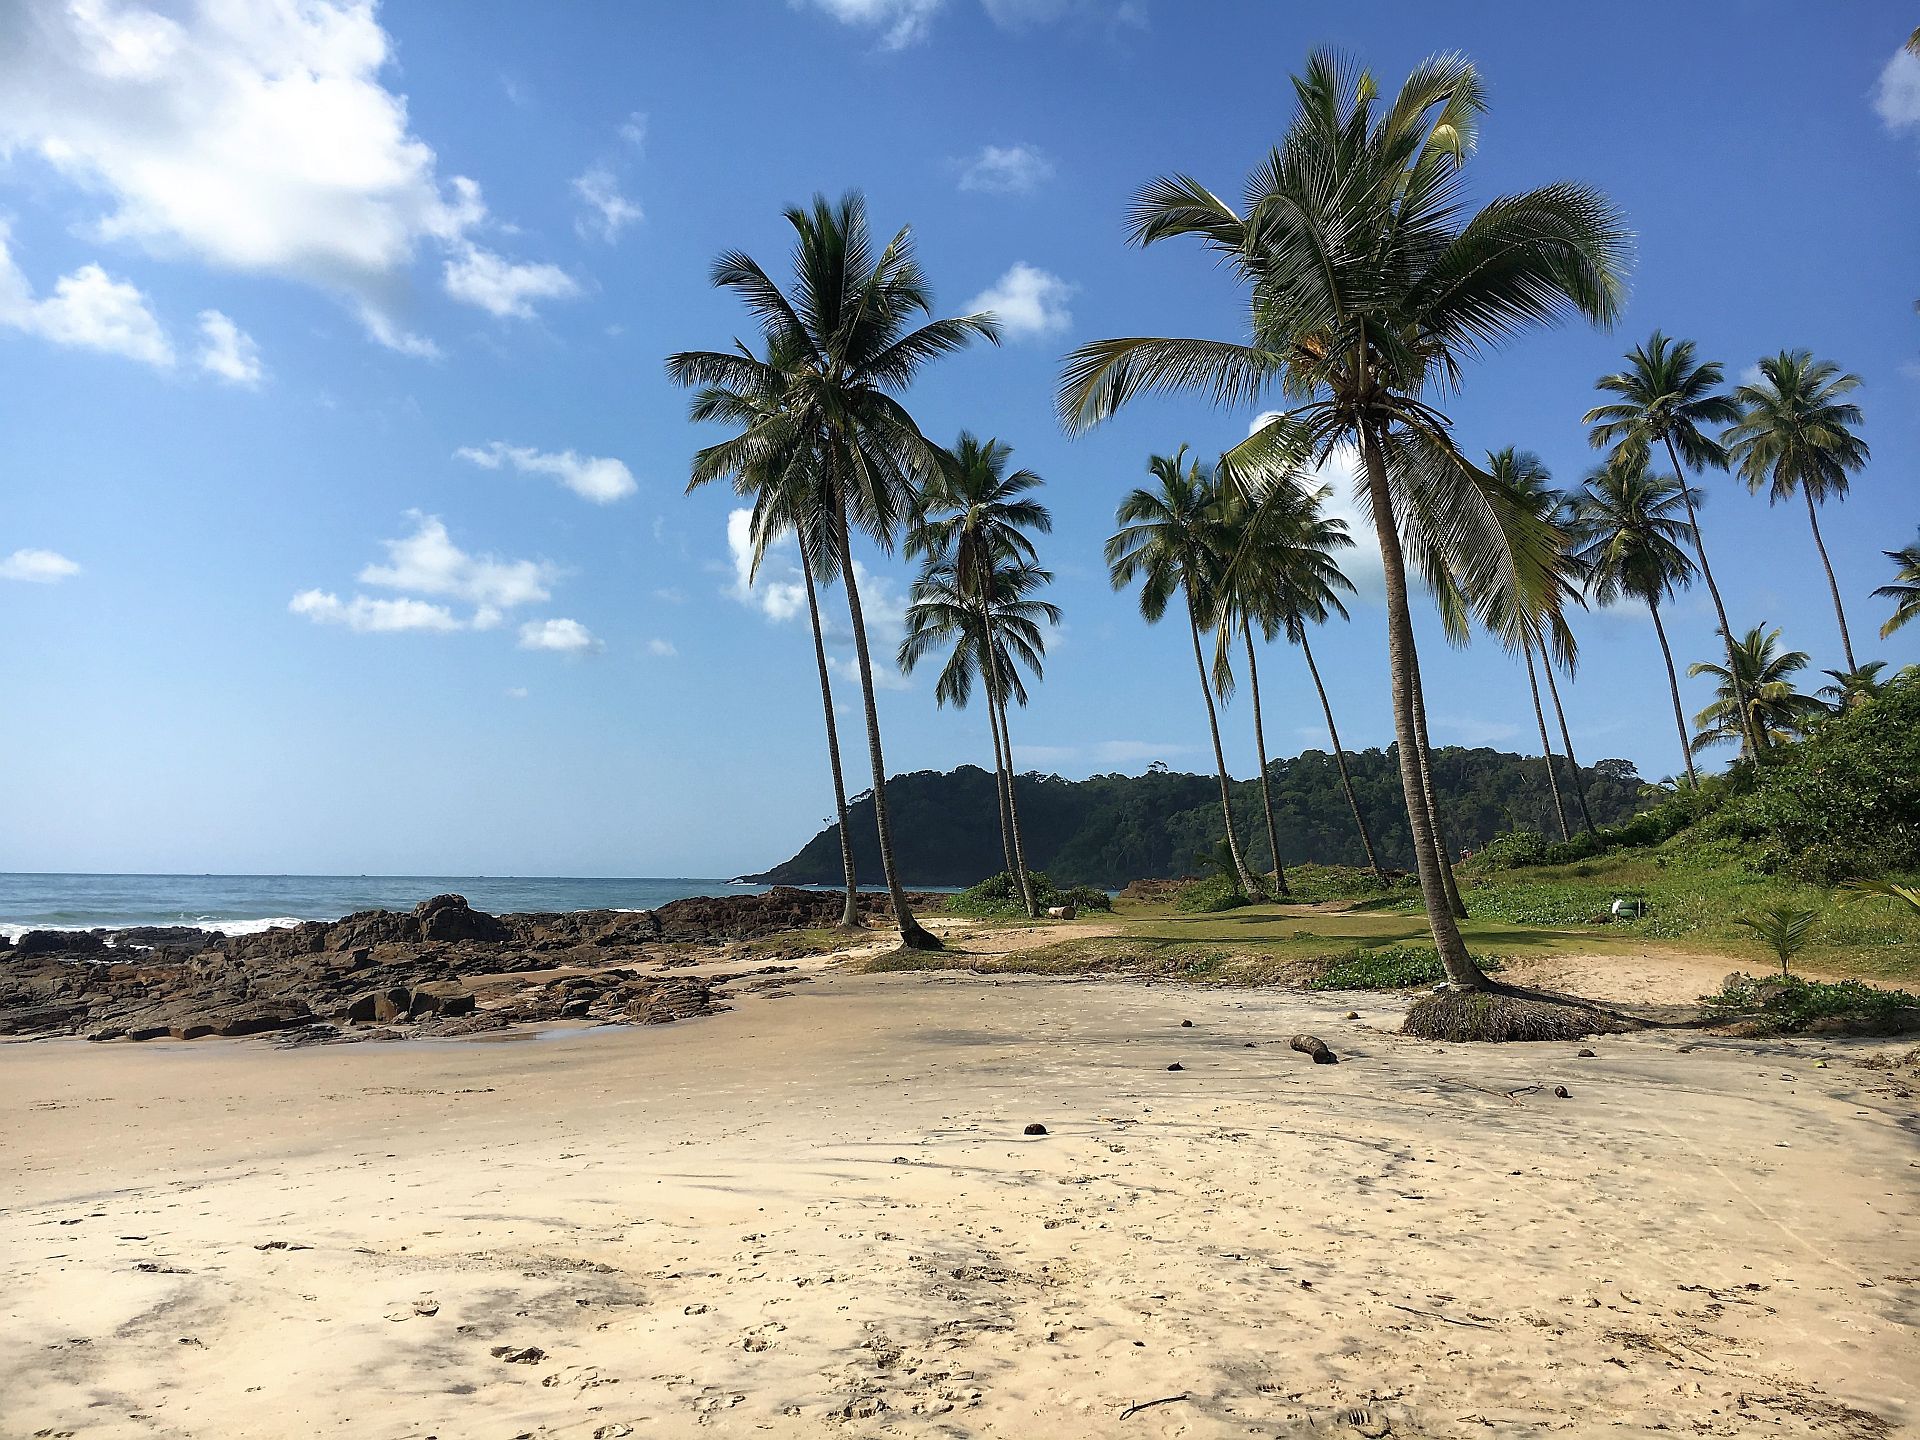 Ilhas, praias, florestas e manguezais formam o cenário de Itacaré, na Bahia